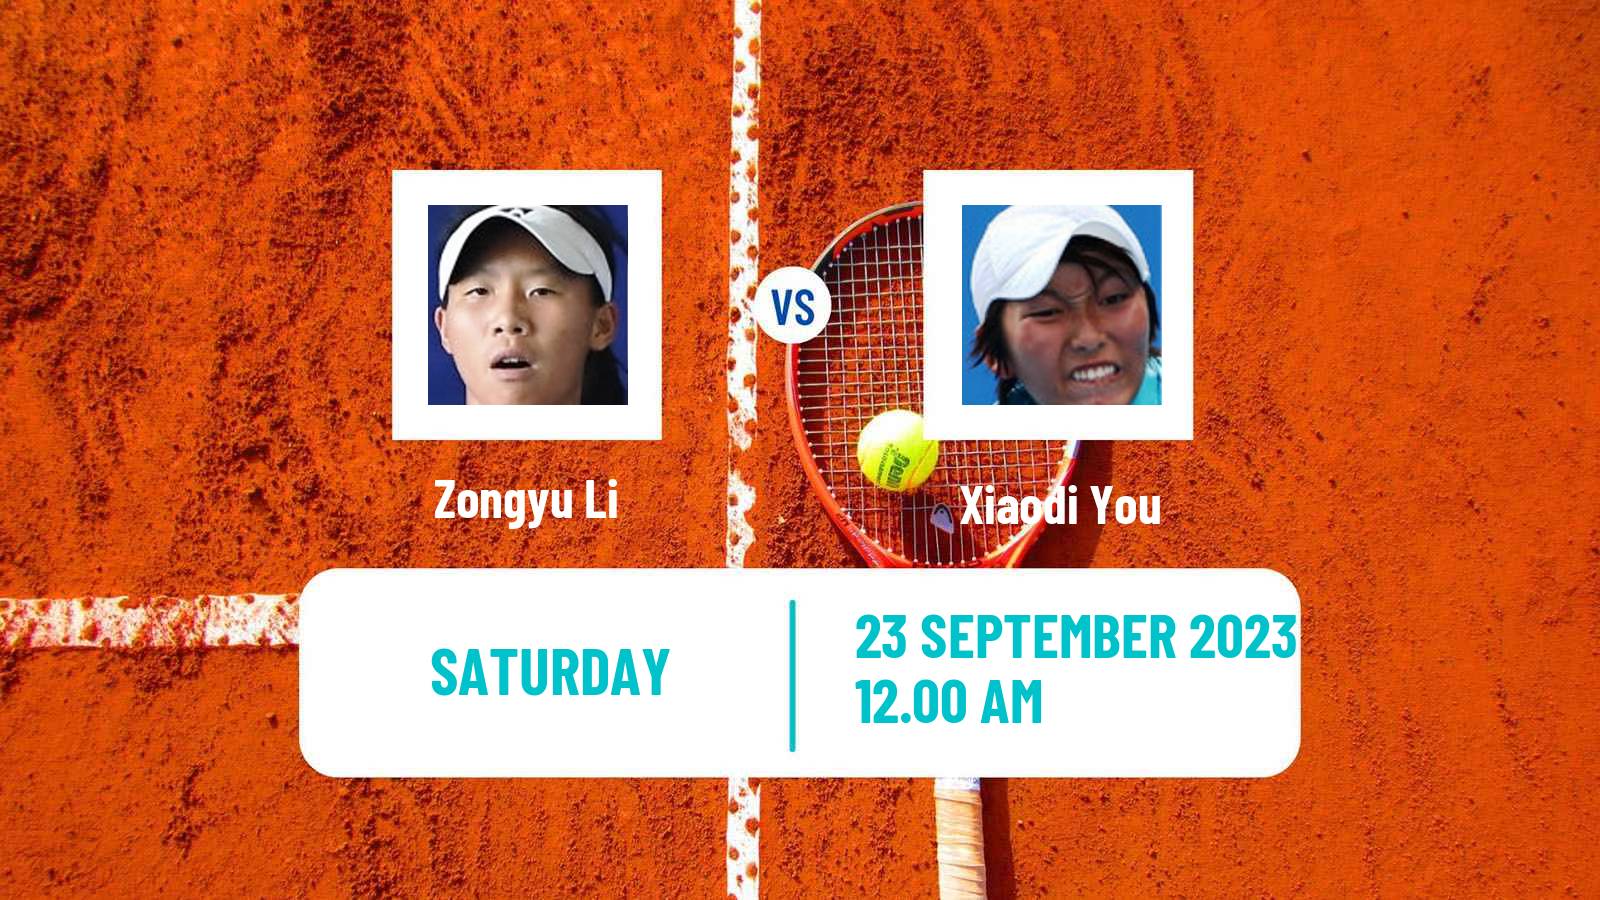 Tennis WTA Ningbo Zongyu Li - Xiaodi You